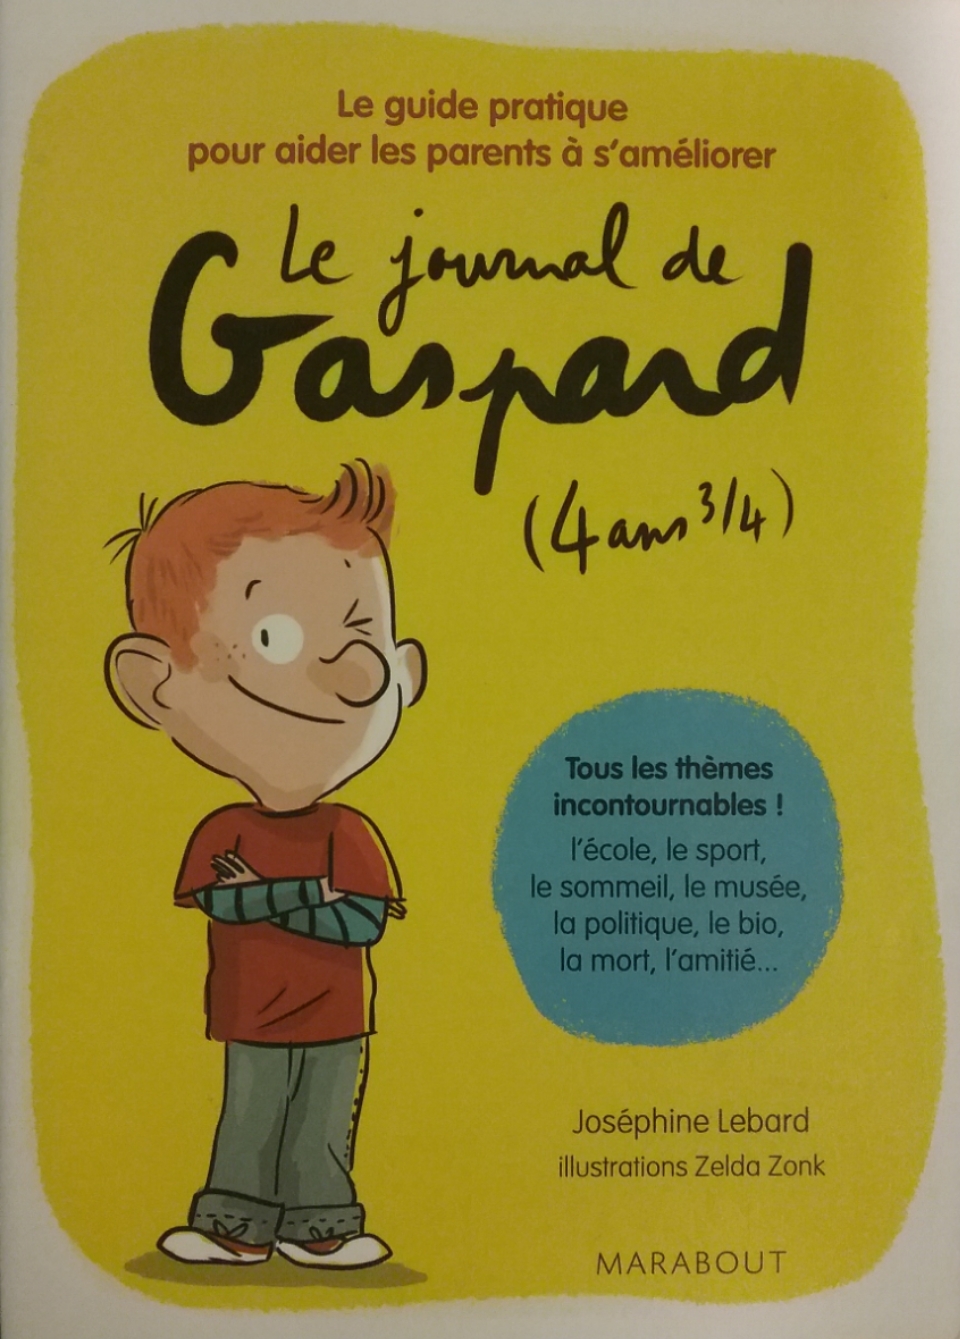 Le journal de Gaspard (4 ans 3/4) le guide pratique pour aider les parents à s’améliorer Joséphine Lebard Zelda Zonk